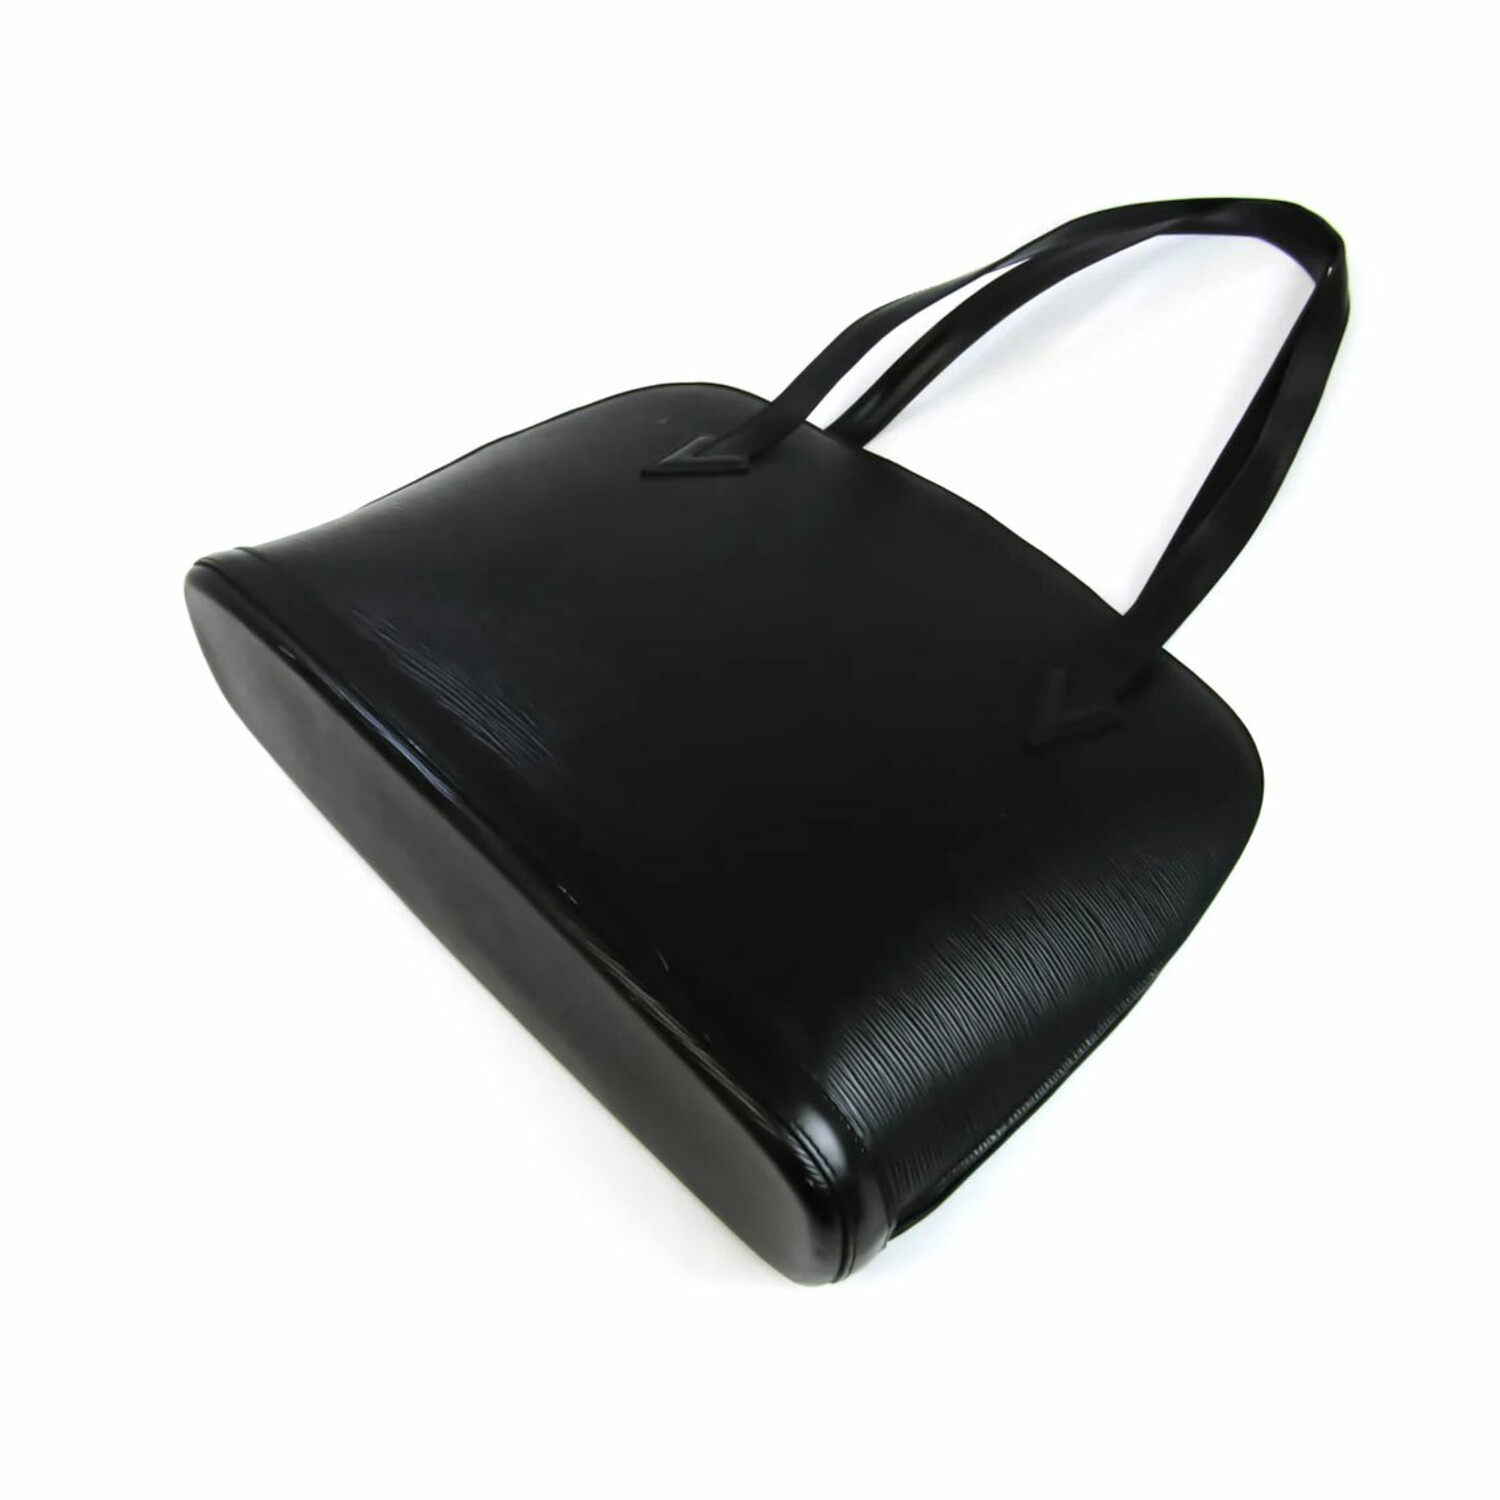 Black Louis Vuitton Epi Lussac Shoulder Bag